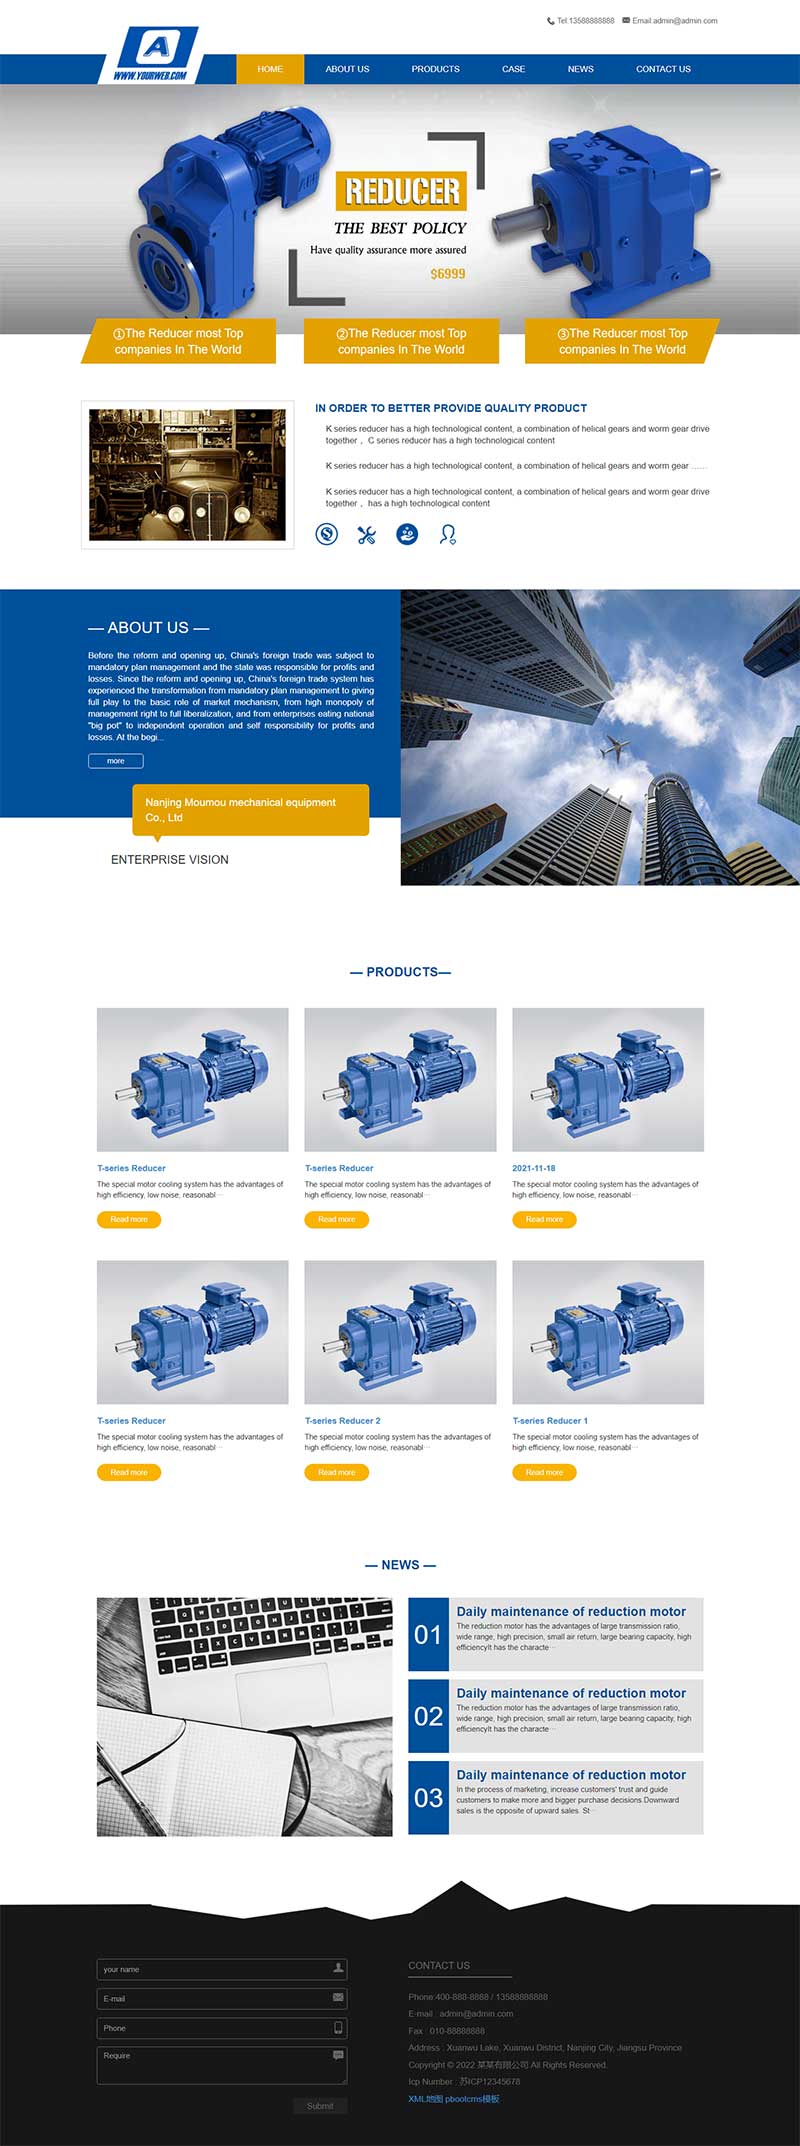 减速机械英文外贸公司通用网站模板 蓝色外贸企业网站源码下载